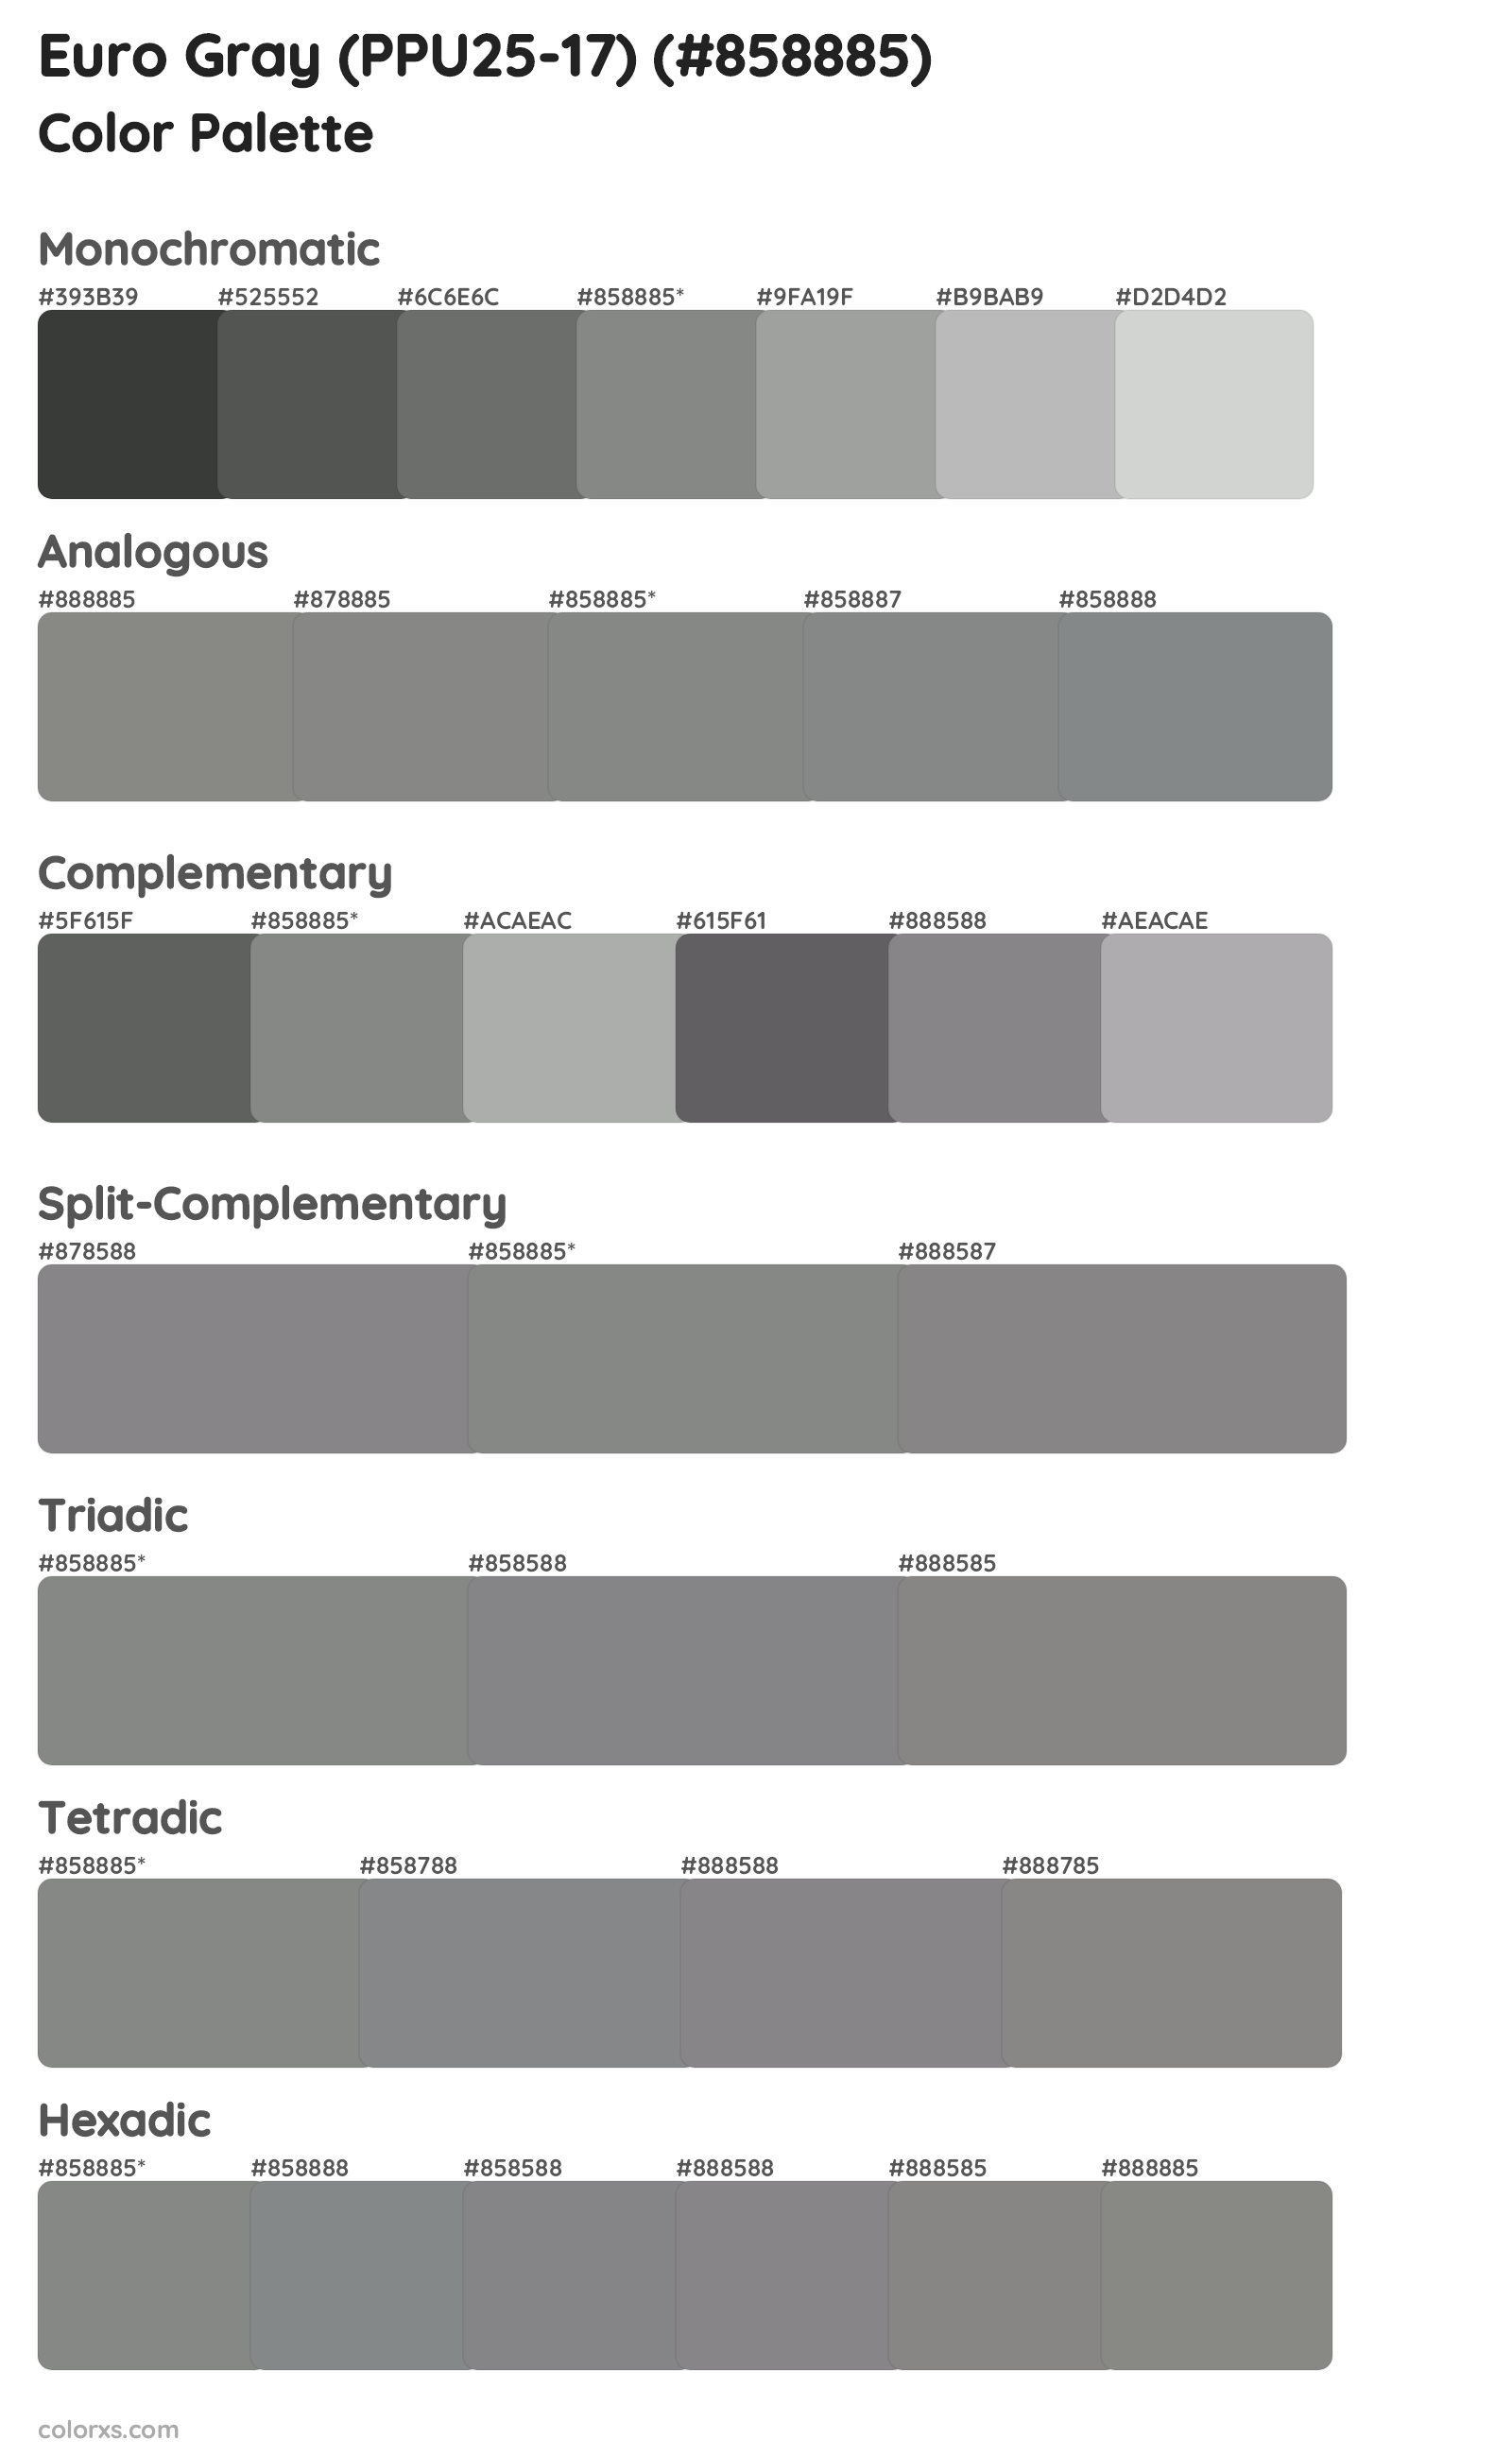 Euro Gray (PPU25-17) Color Scheme Palettes